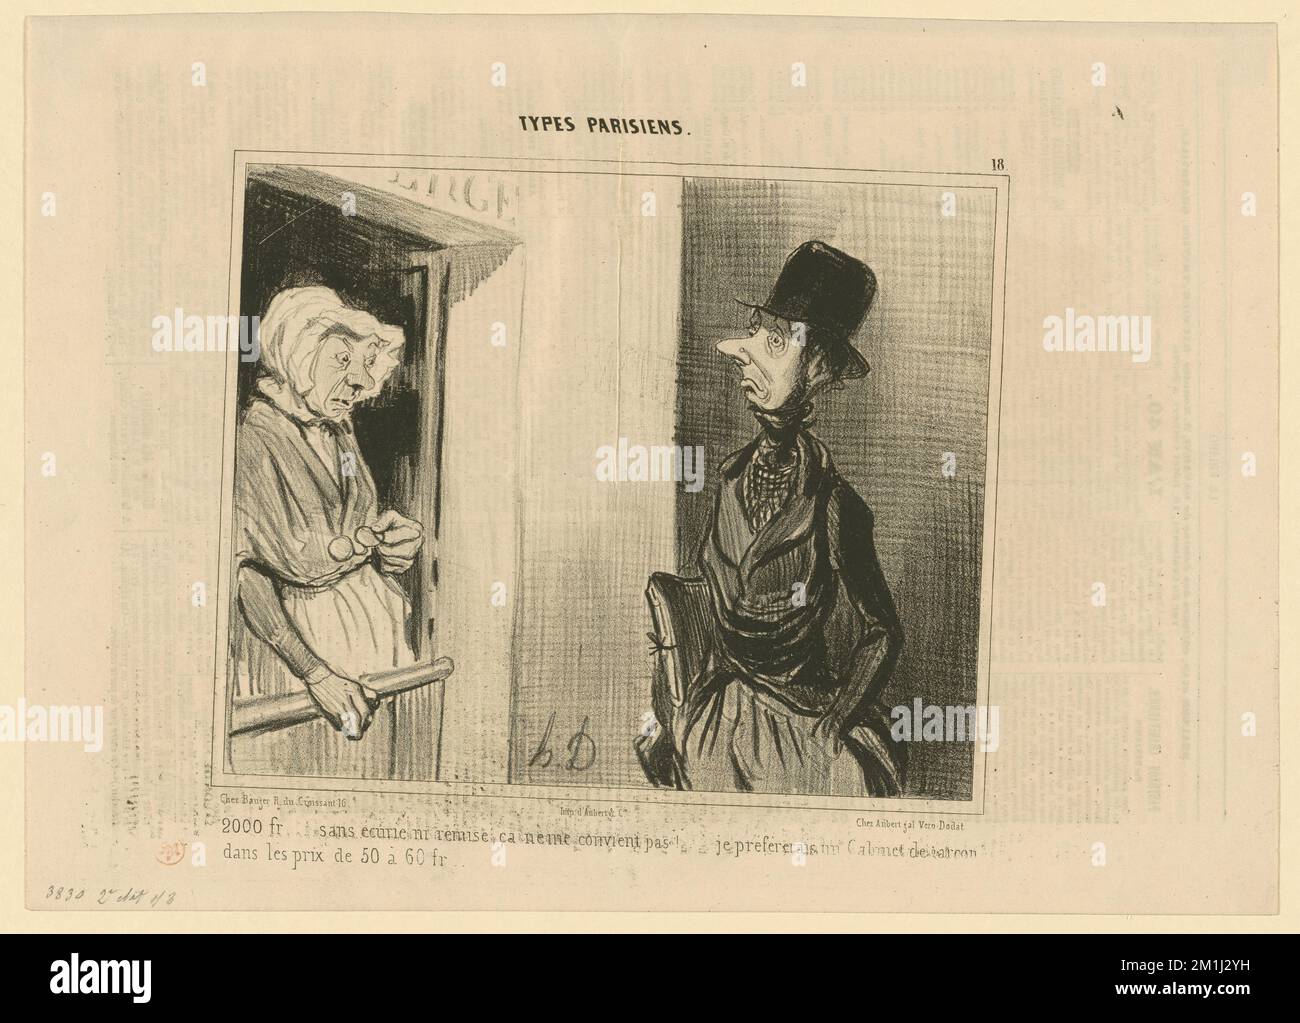 2000 fr. sans écurie ni remise, cà ne me convient pas.... Honoré Daumier (1808-1879). Litografie Foto Stock